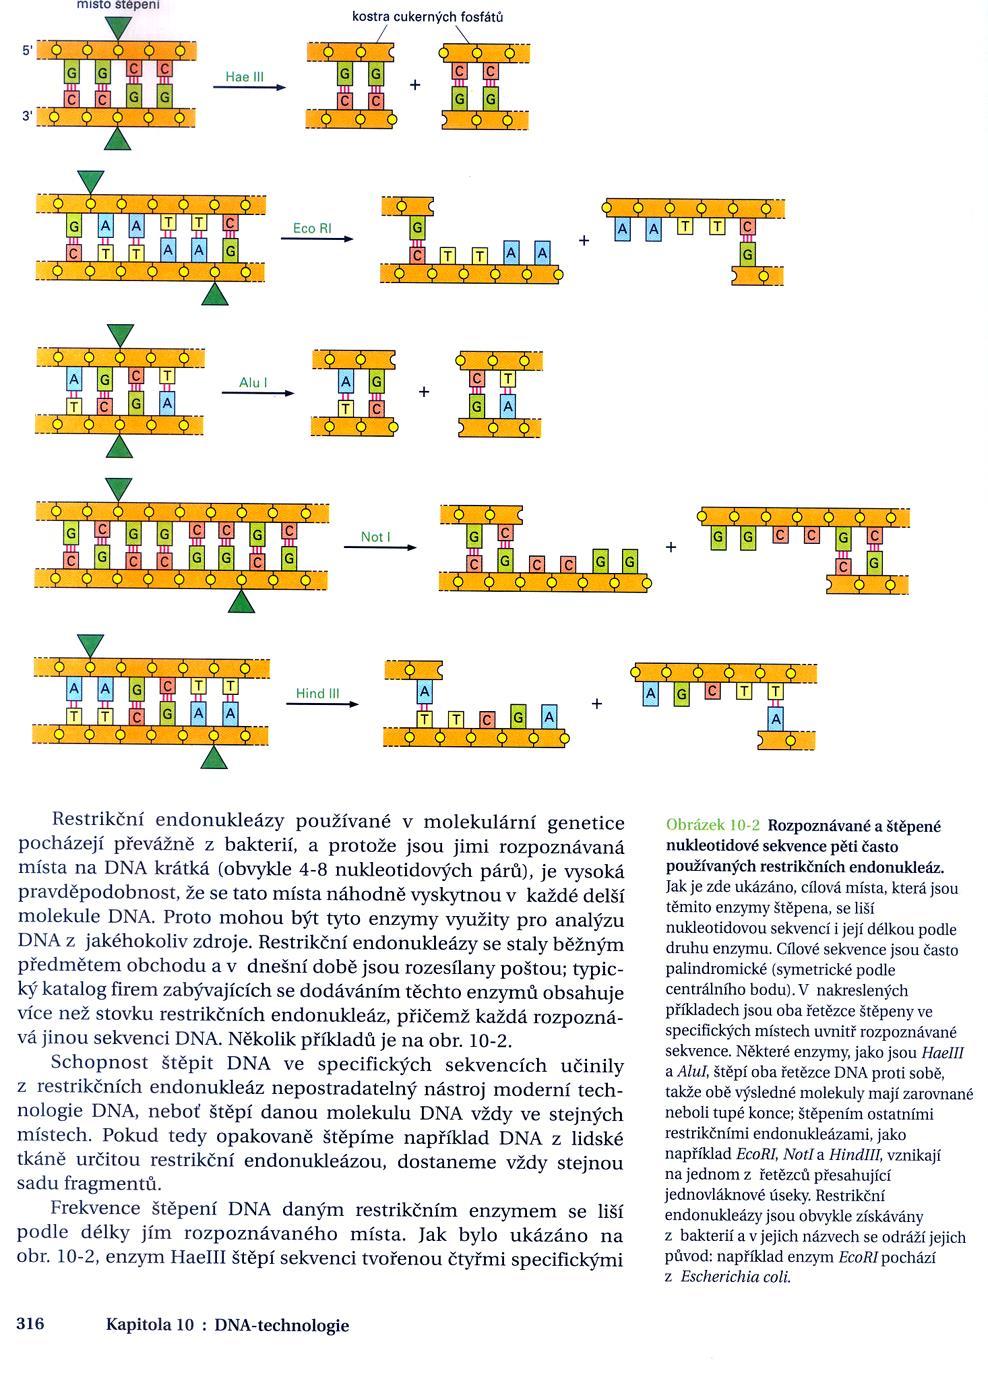 Izoschizomery enzymy, které štěpí stejné sekvence.